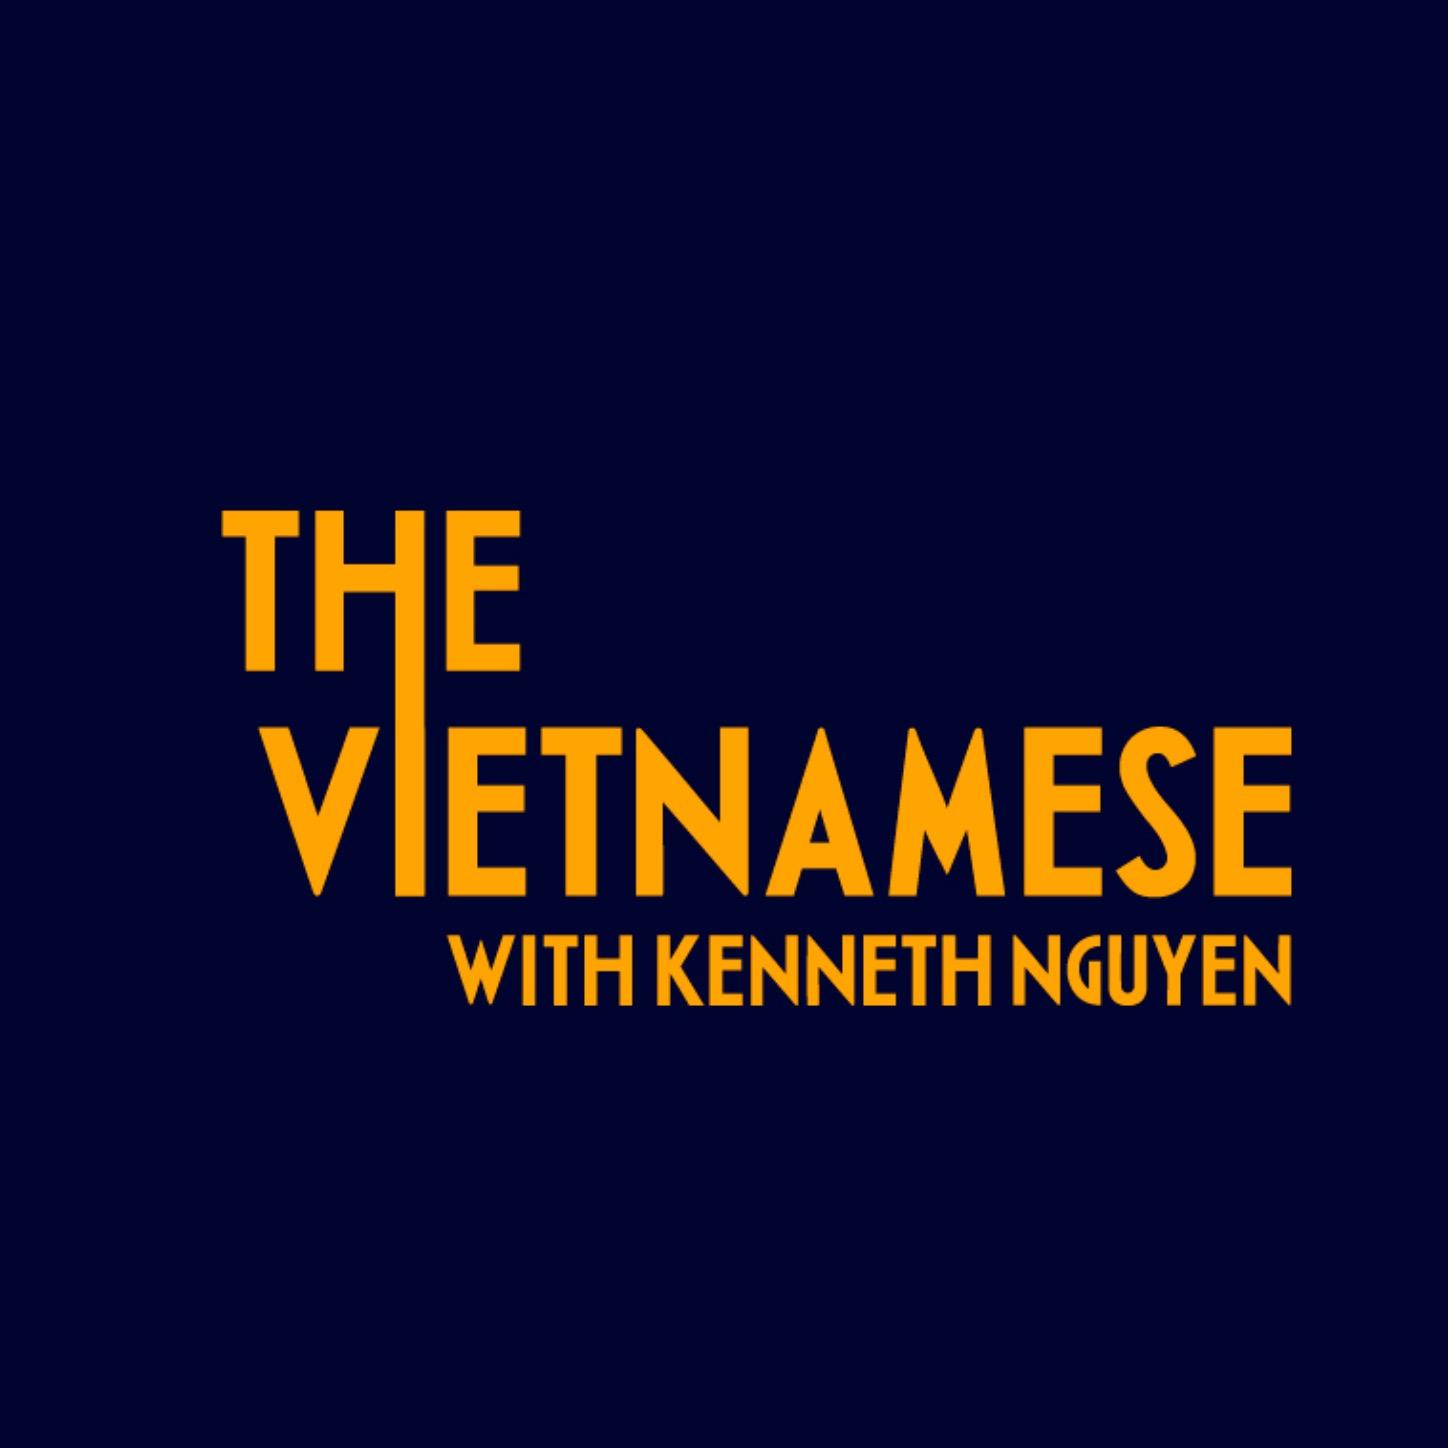 Nếu bạn muốn khám phá nhiều hơn về văn hóa và tâm hồn Việt Nam, hãy nghe RedCircle - The Vietnamese with Kenneth Nguyen podcast. Với những câu chuyện và trải nghiệm đầy tình cảm, podcast này sẽ làm bạn yêu thích đất nước Việt Nam hơn.